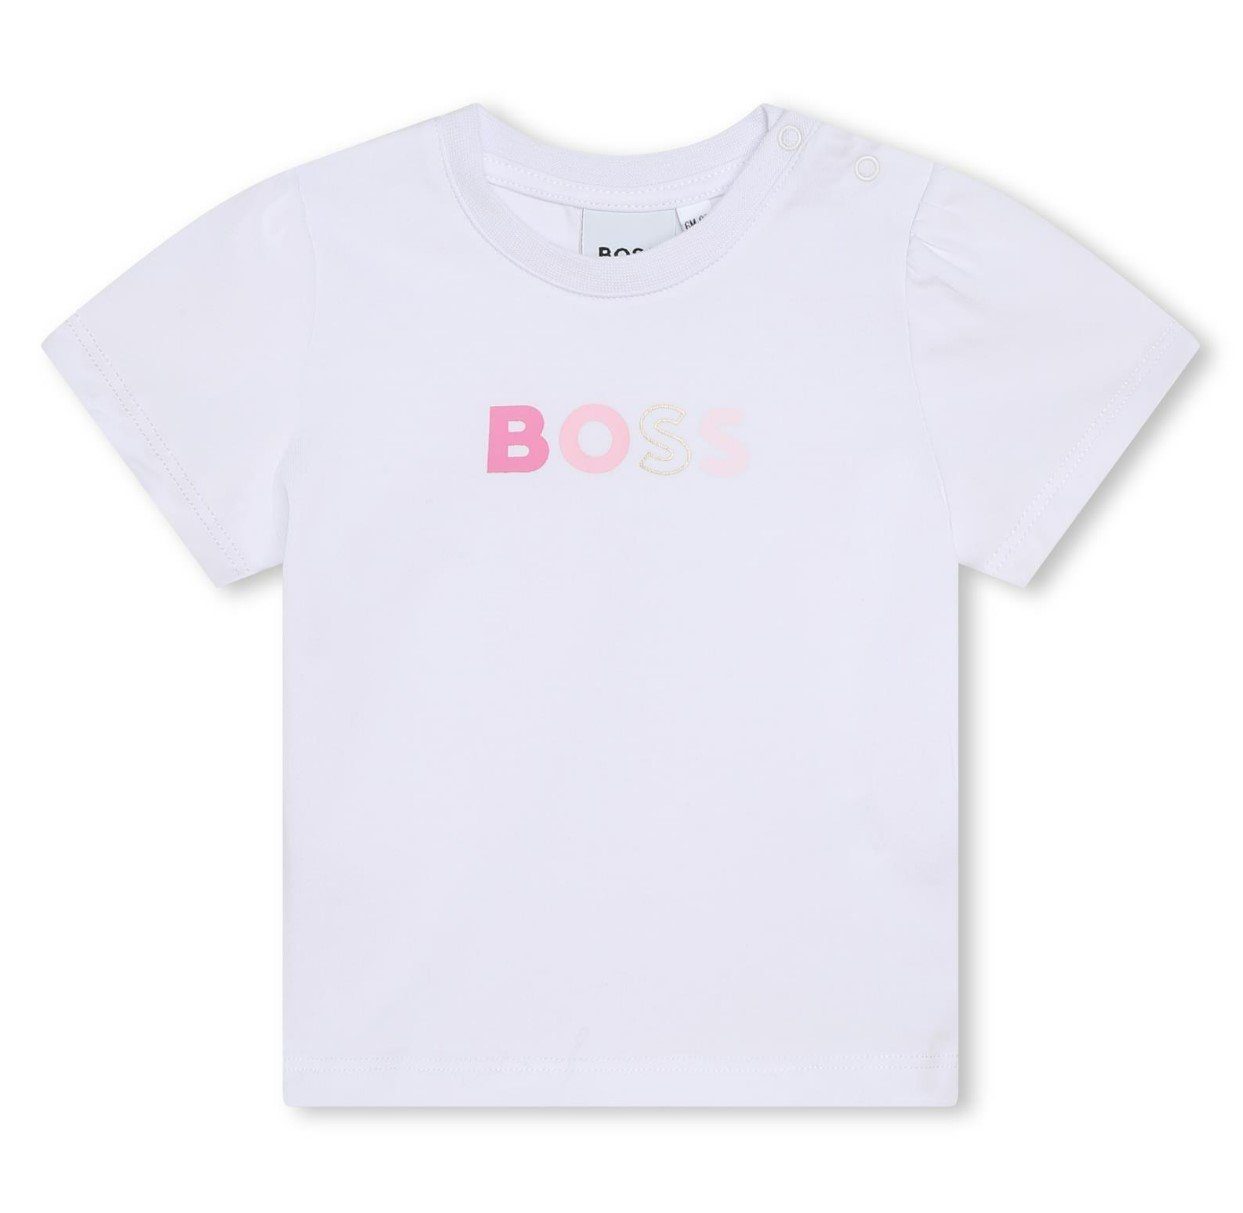 BOSS Neugeborenen-Geschenkset BOSS Baby 3-Teiler rosa Jogginganzug